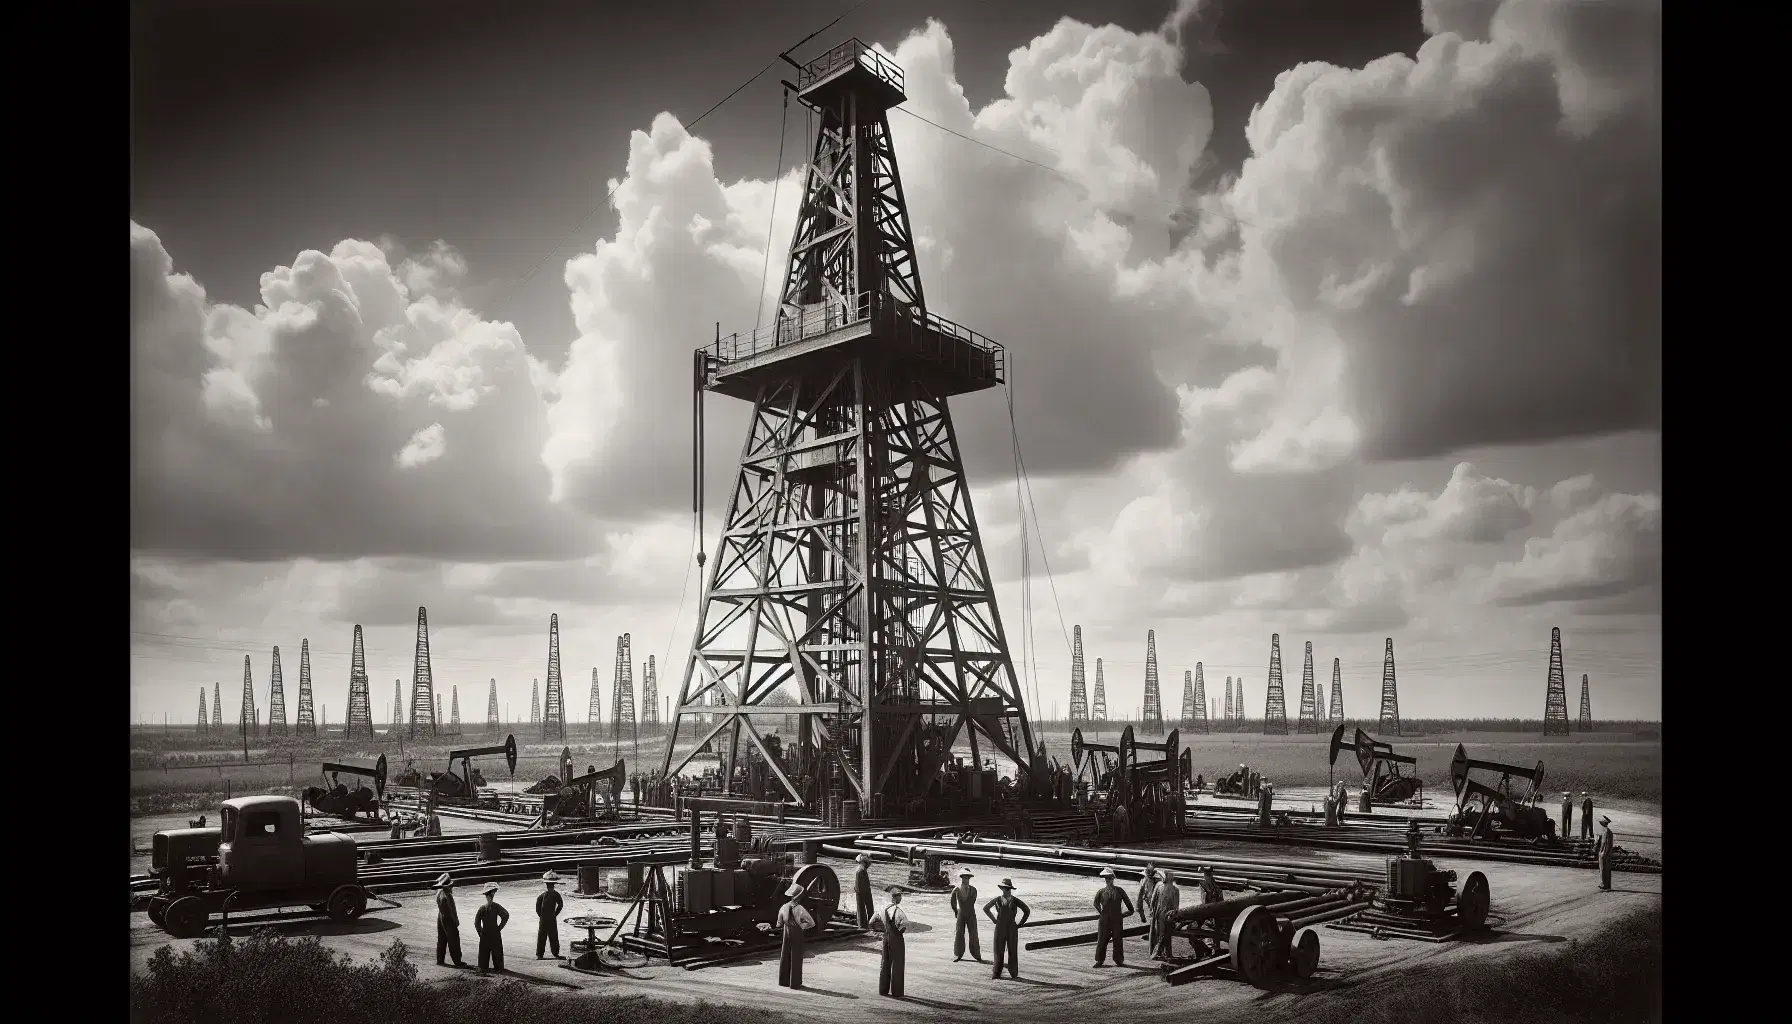 Campo petrolífero de la década de 1940 con torre de perforación y trabajadores, rodeado de múltiples derricks y paisaje industrial bajo cielo parcialmente nublado.